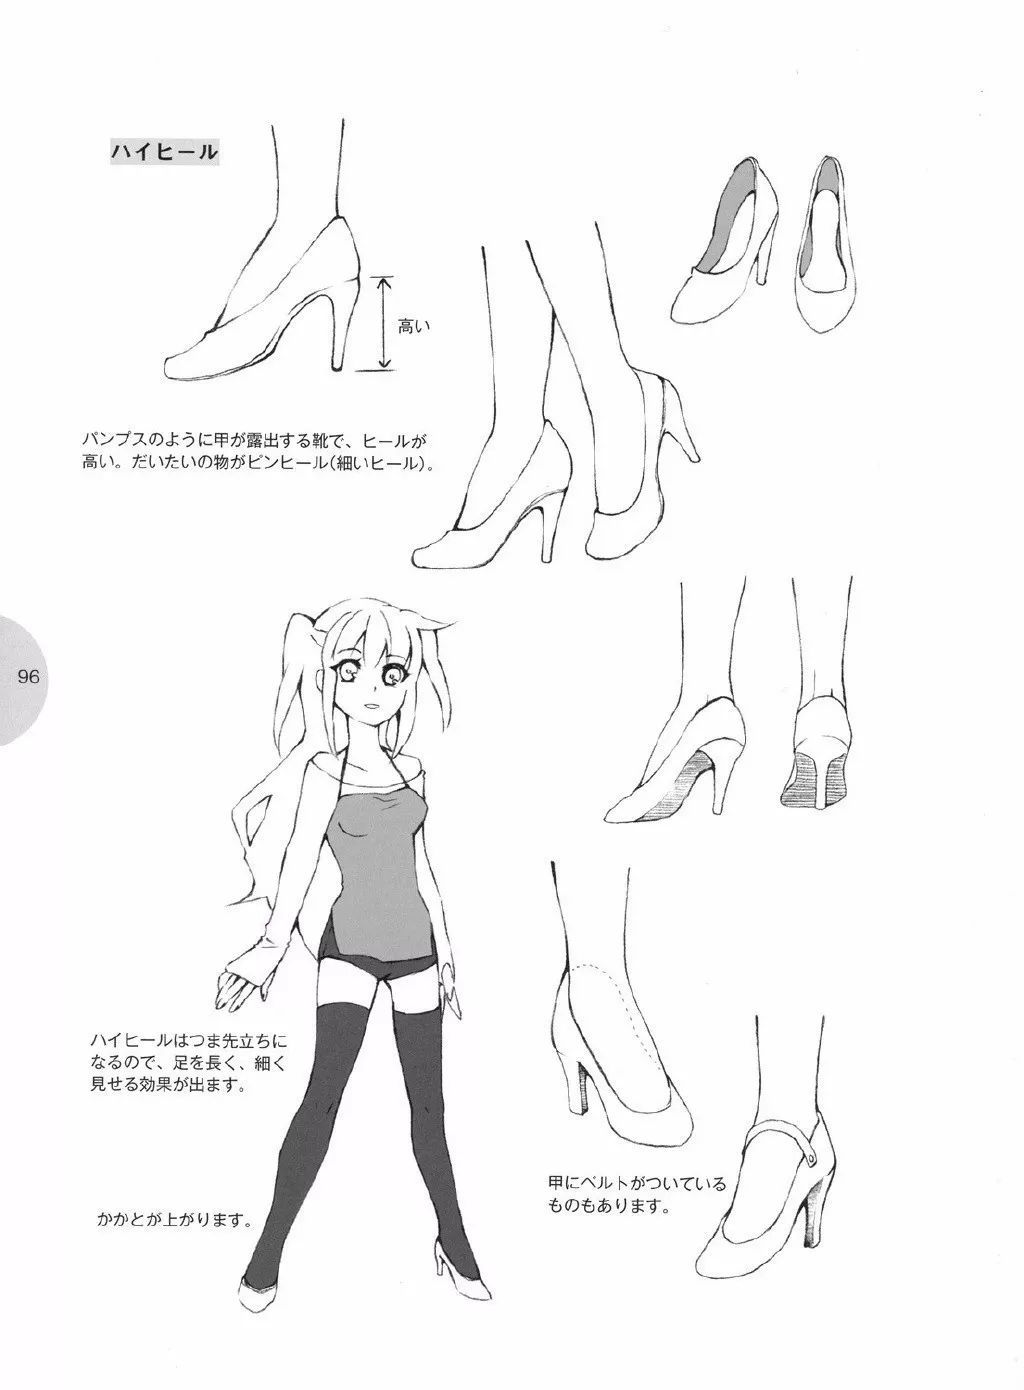 【漫画教程】脚与鞋子怎么画,常见鞋子款式的简单绘画教程